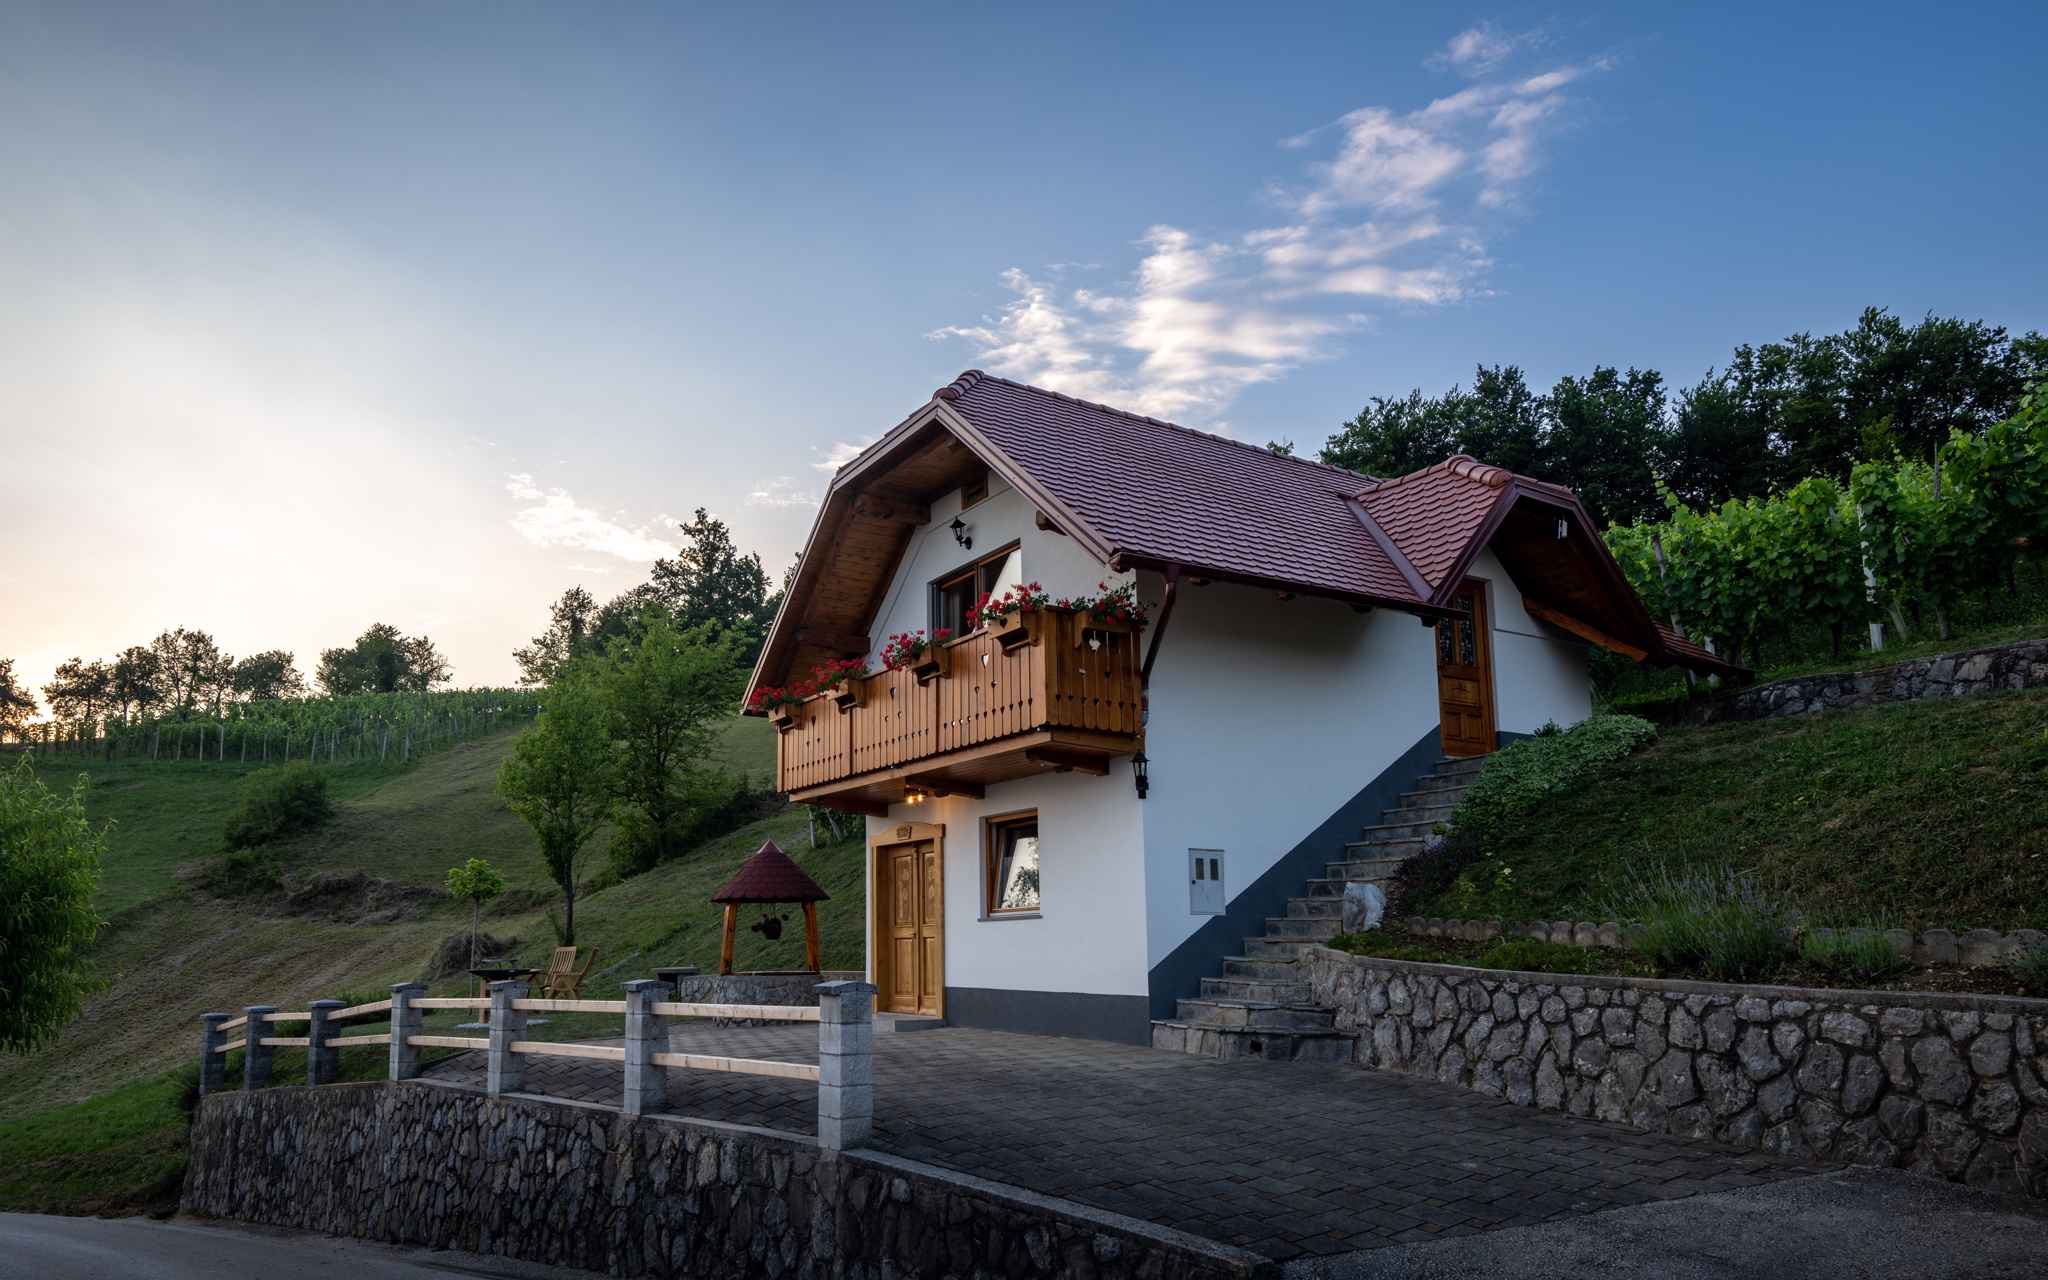 Ferienhaus auf dem Weinberghügel in der N&aum Ferienhaus in Slowenien